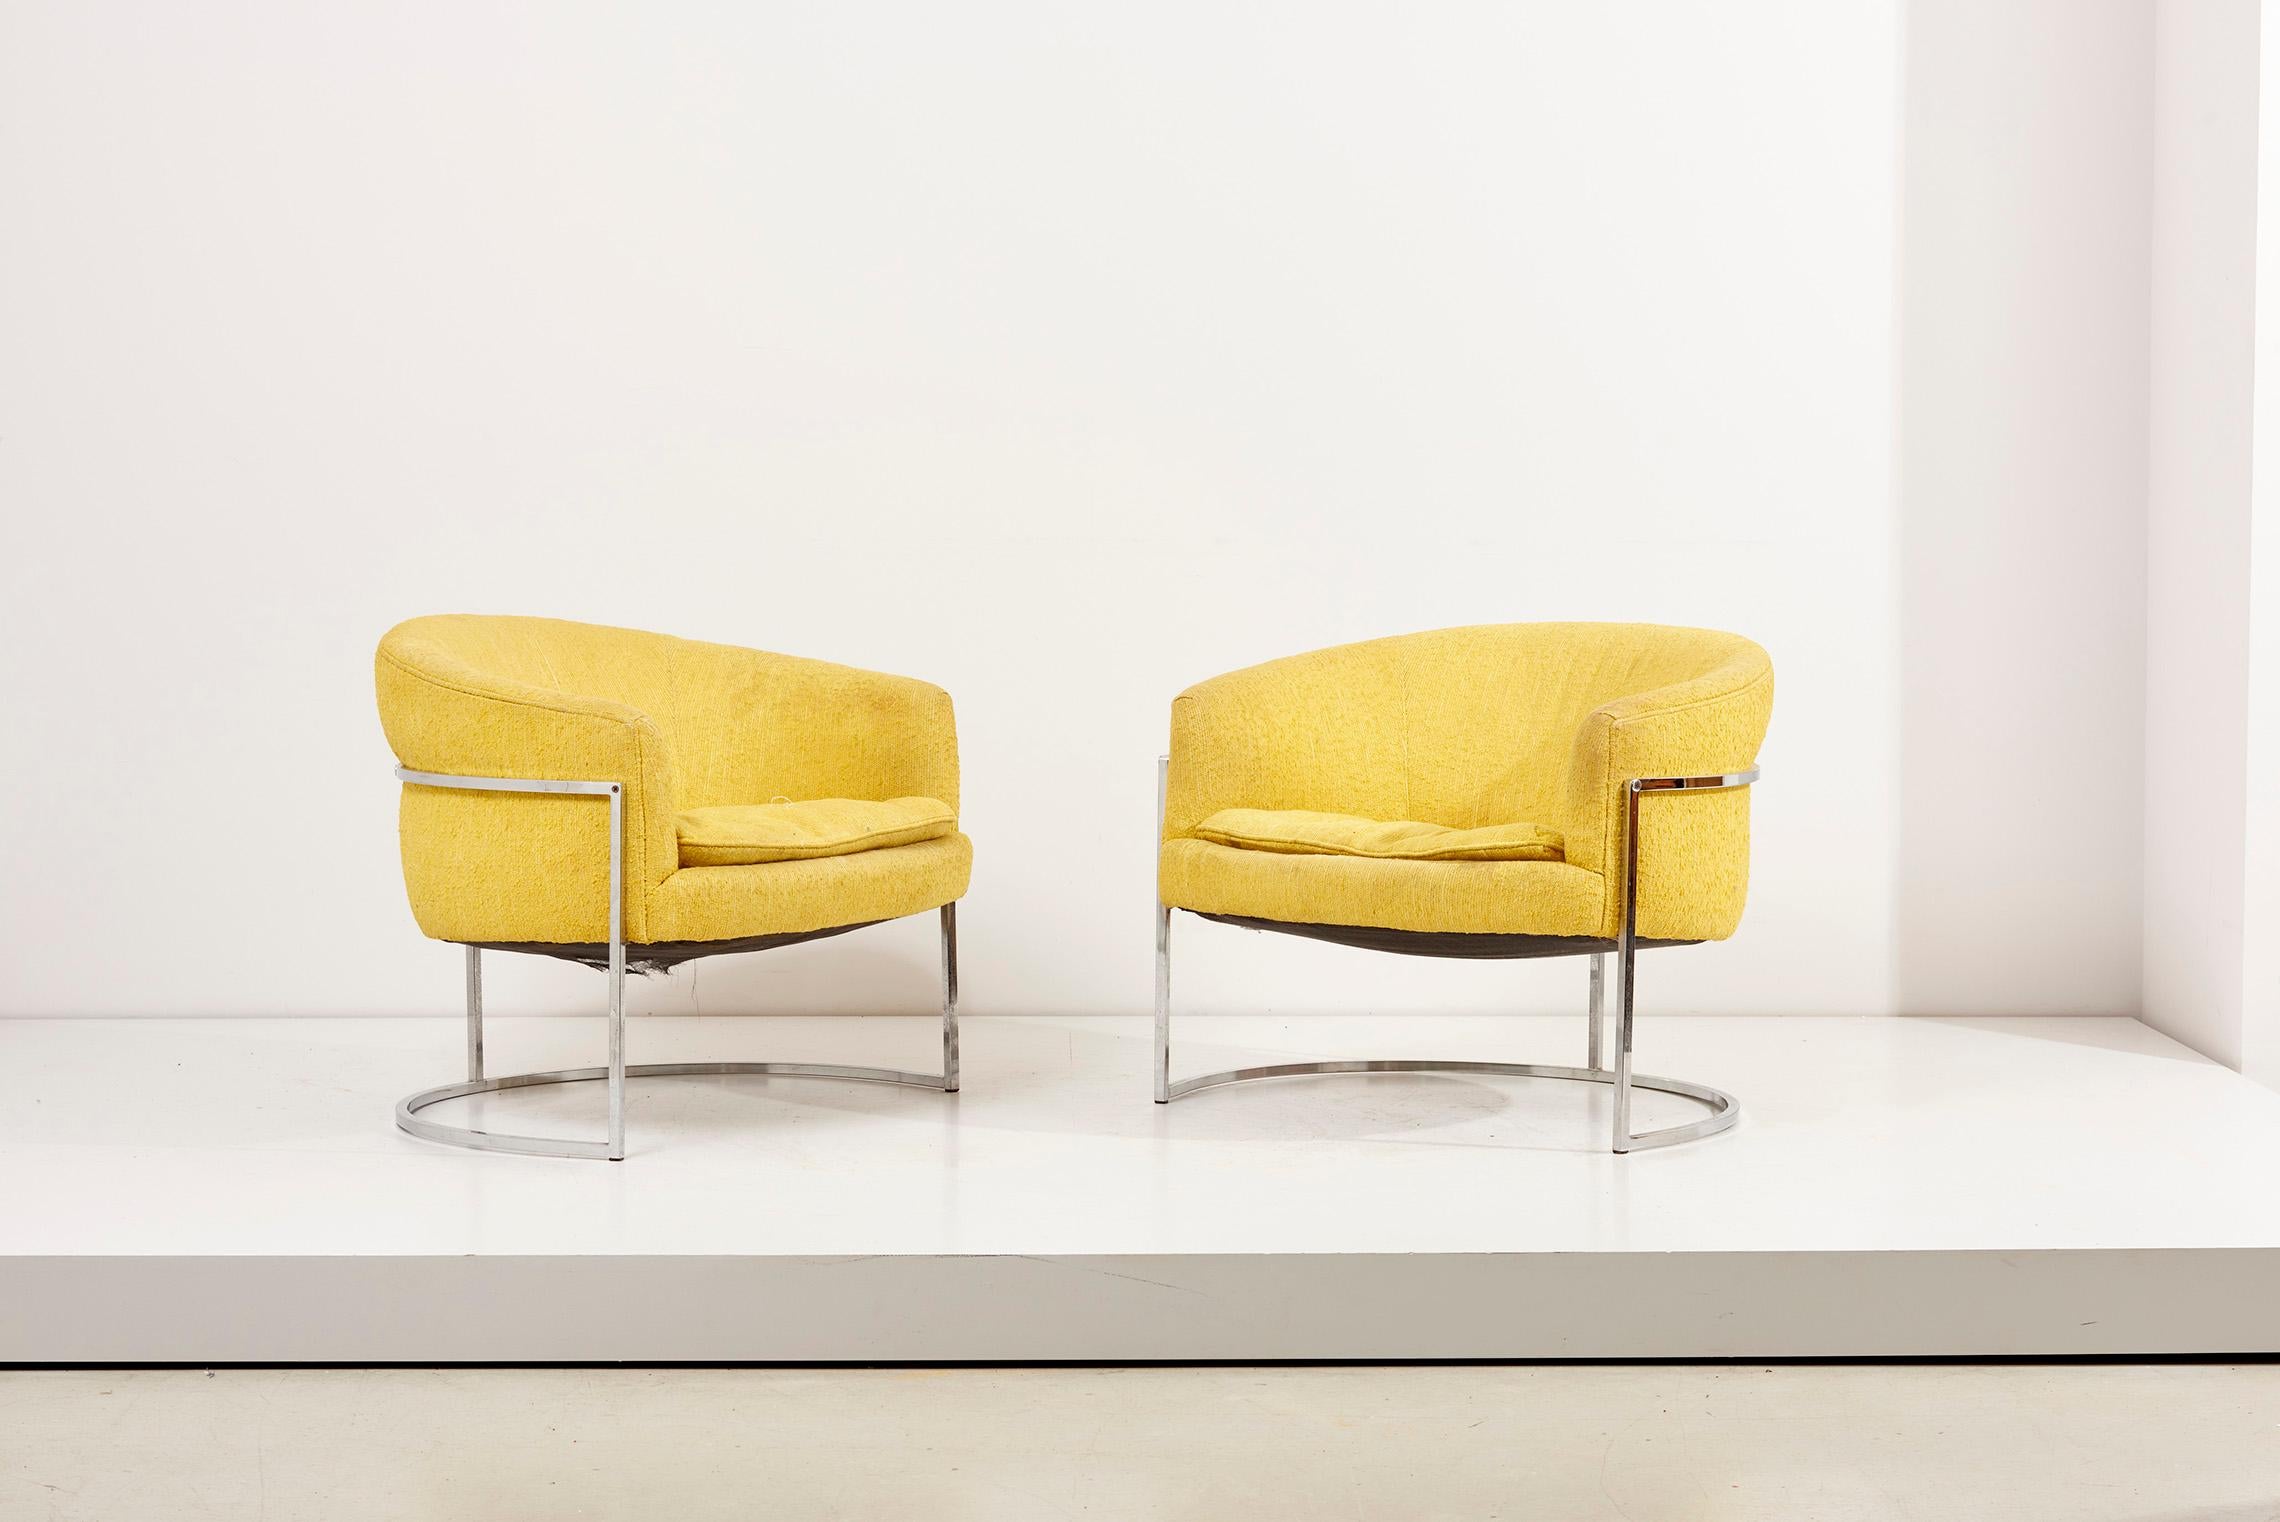 Ein Paar Bernhardt Lounge Chairs in Chrom und gelber Polsterung. 
Die Stühle sind im Vintage-Stil gepolstert. Wir bieten auch Neupolsterungen in unserer hauseigenen Werkstatt an.